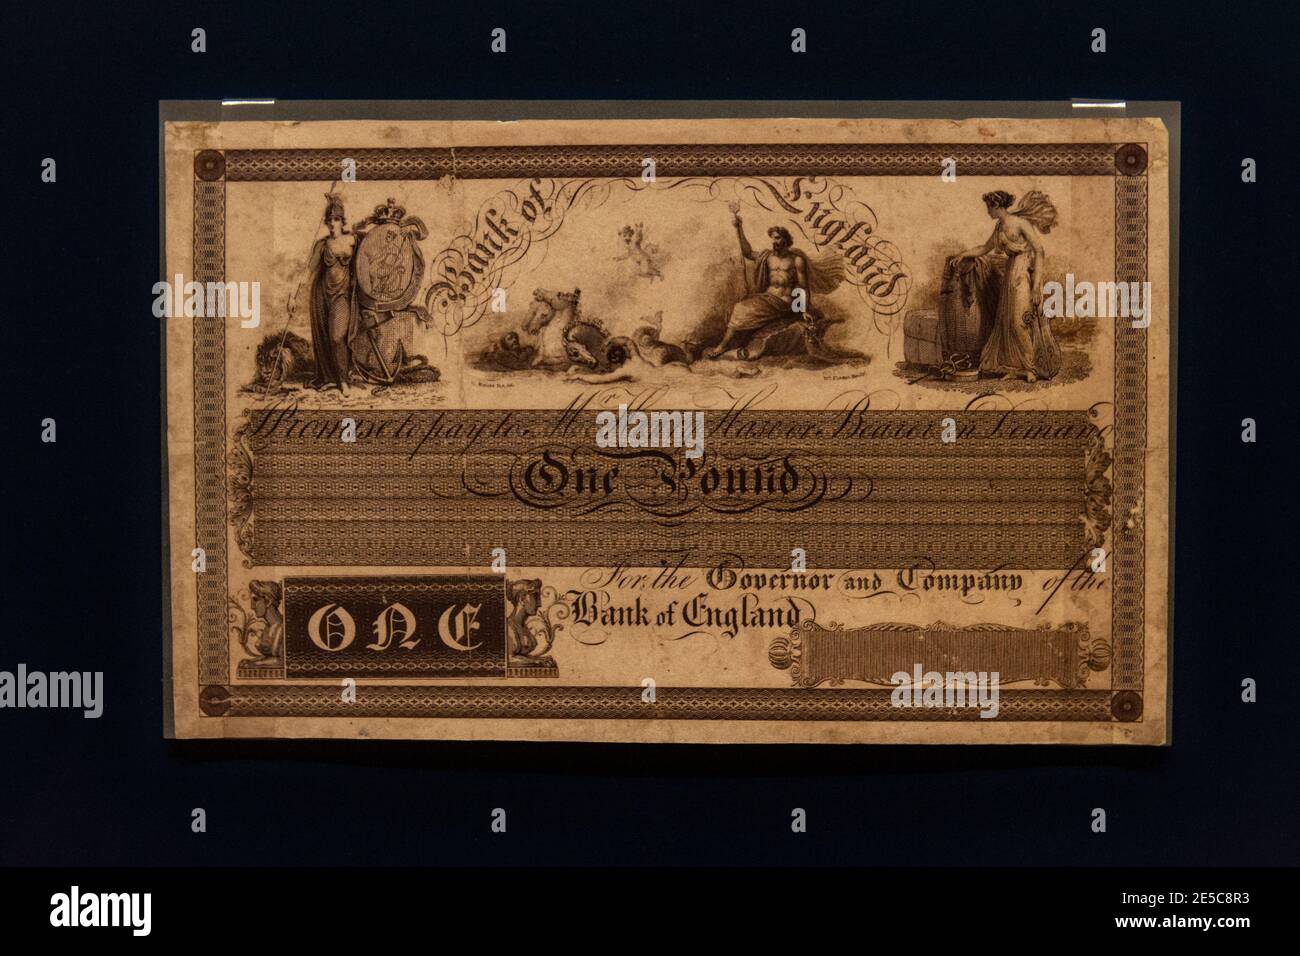 Ein Designprozess für eine Bank of England ein Pfund (£1) Note von 1830 (Replik), The Money Gallery, Ashmolean Museum, Oxford, UK. Stockfoto